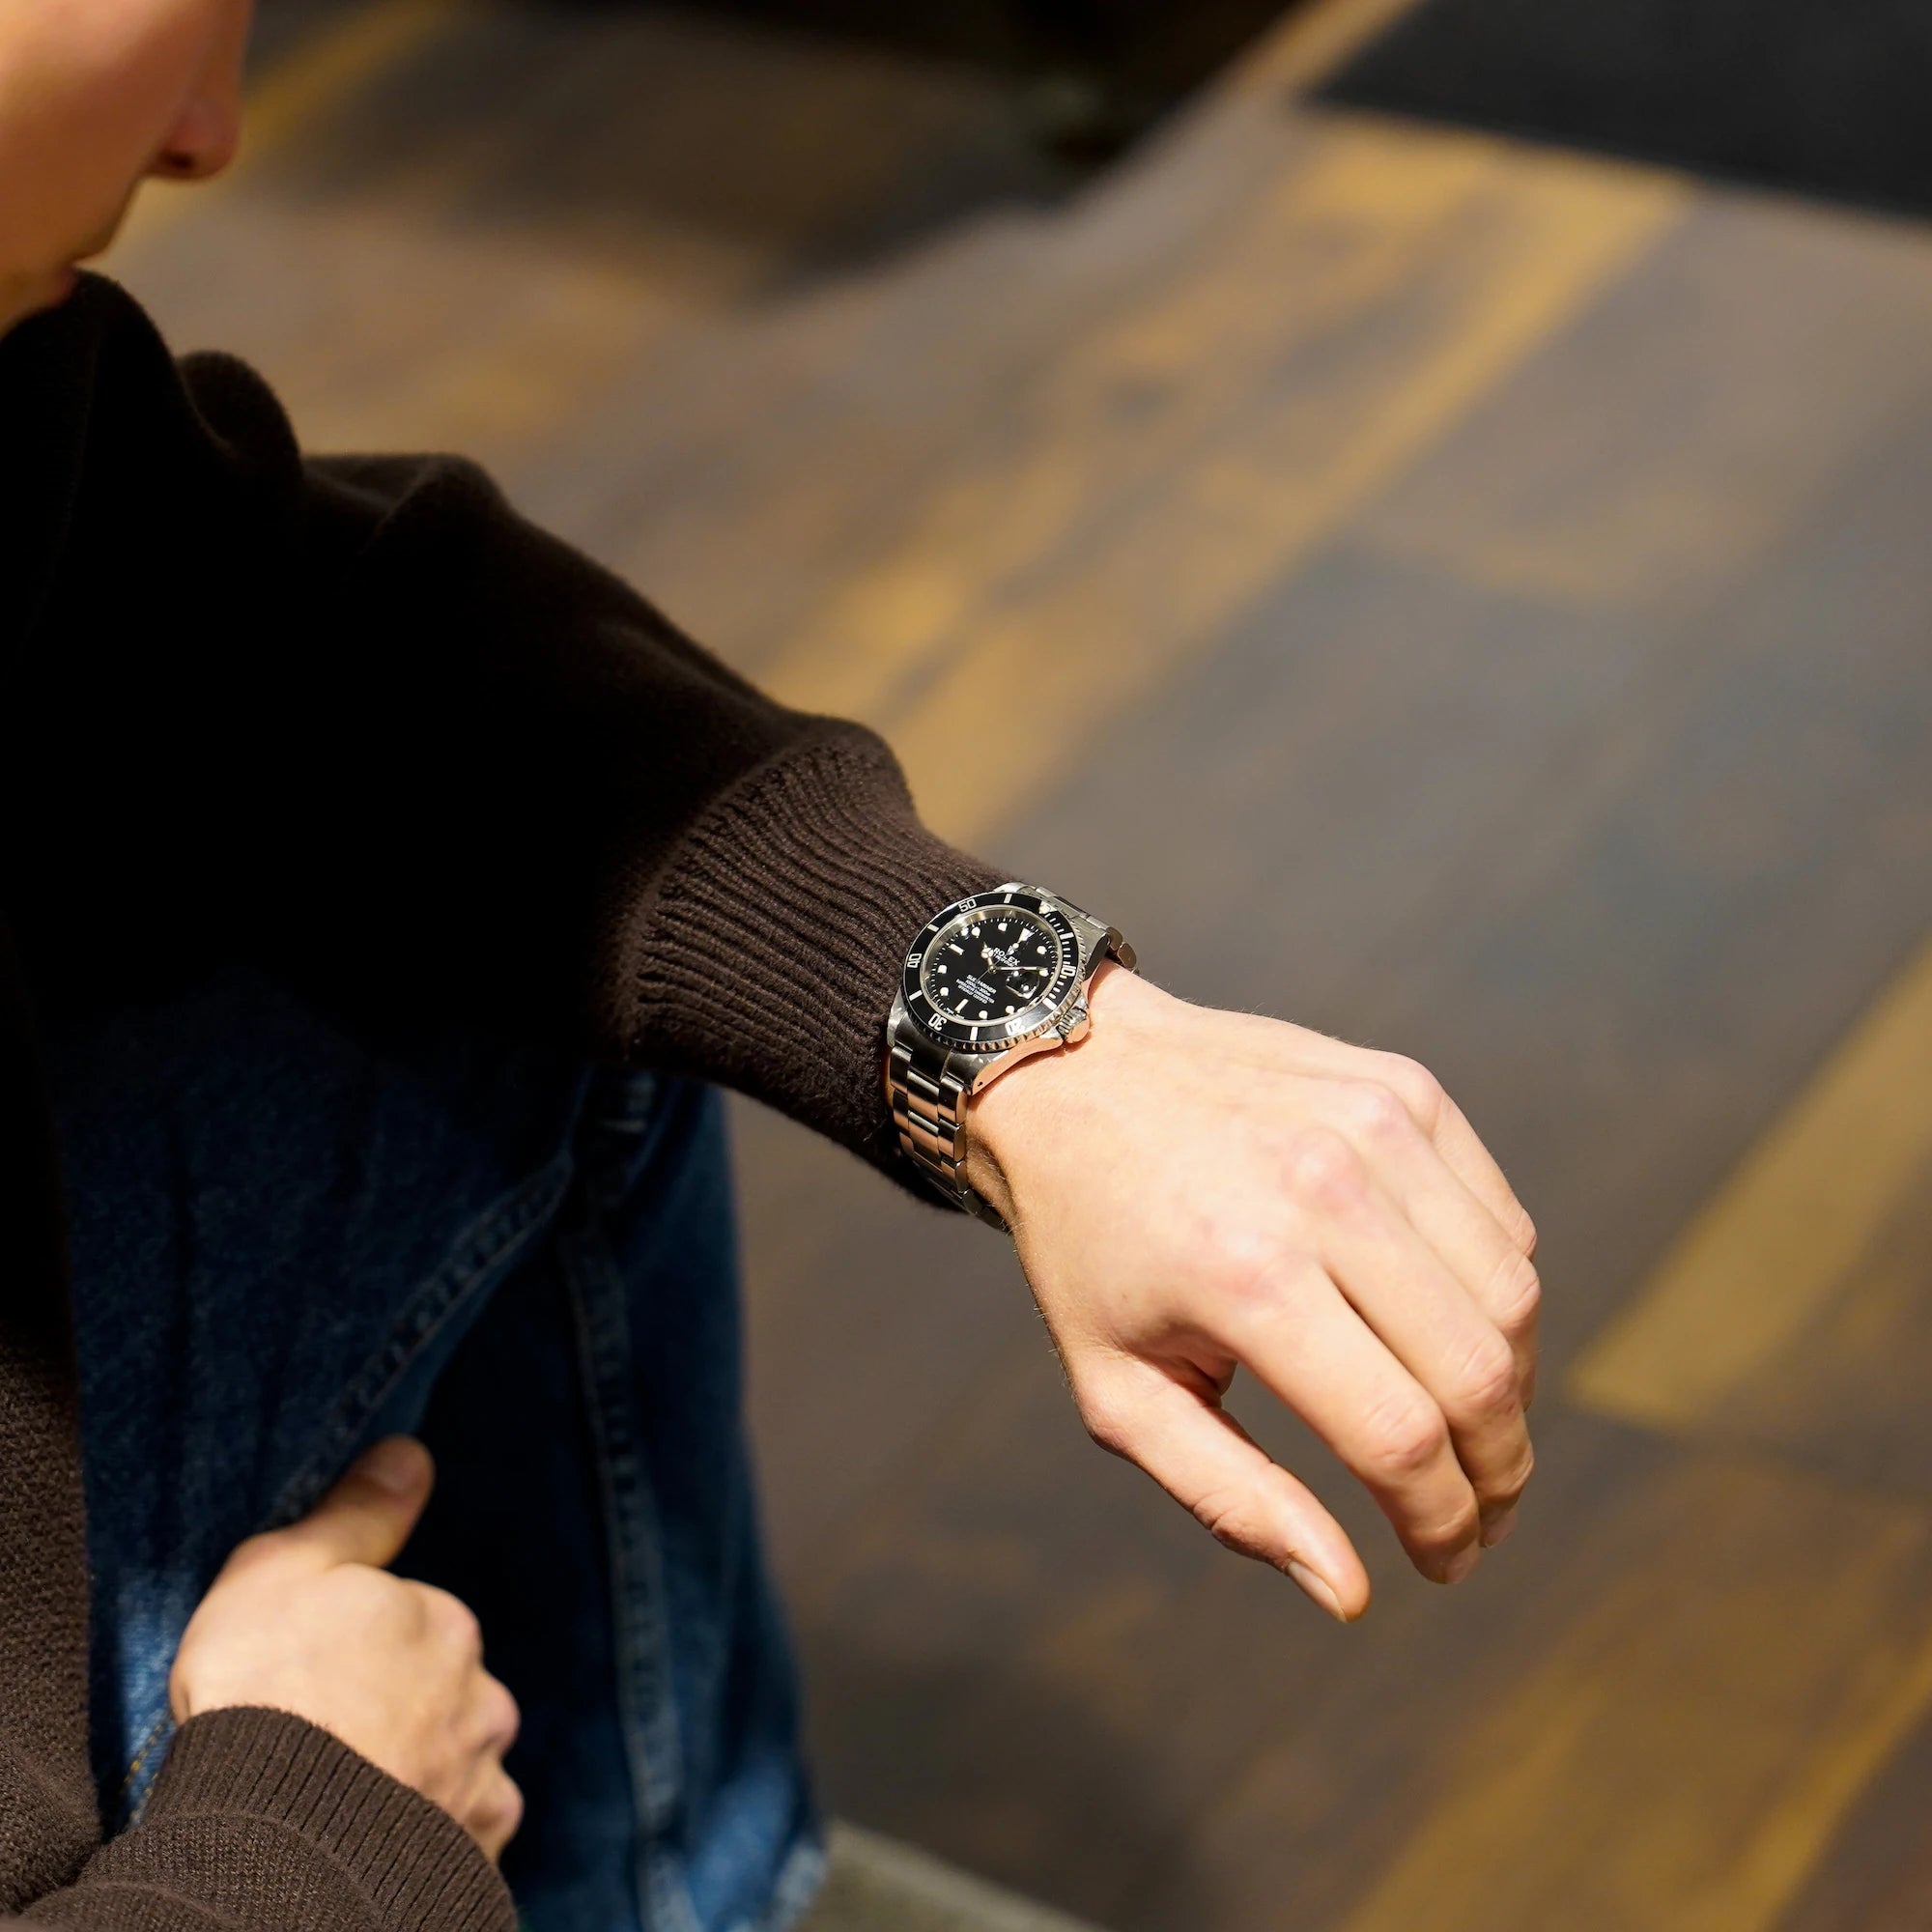 Mann trägt die Rolex Submariner Date in schwarz, Referenz 16610, mit Flat-Four-Lünette am Handgelenk und schaut sich die Uhr an